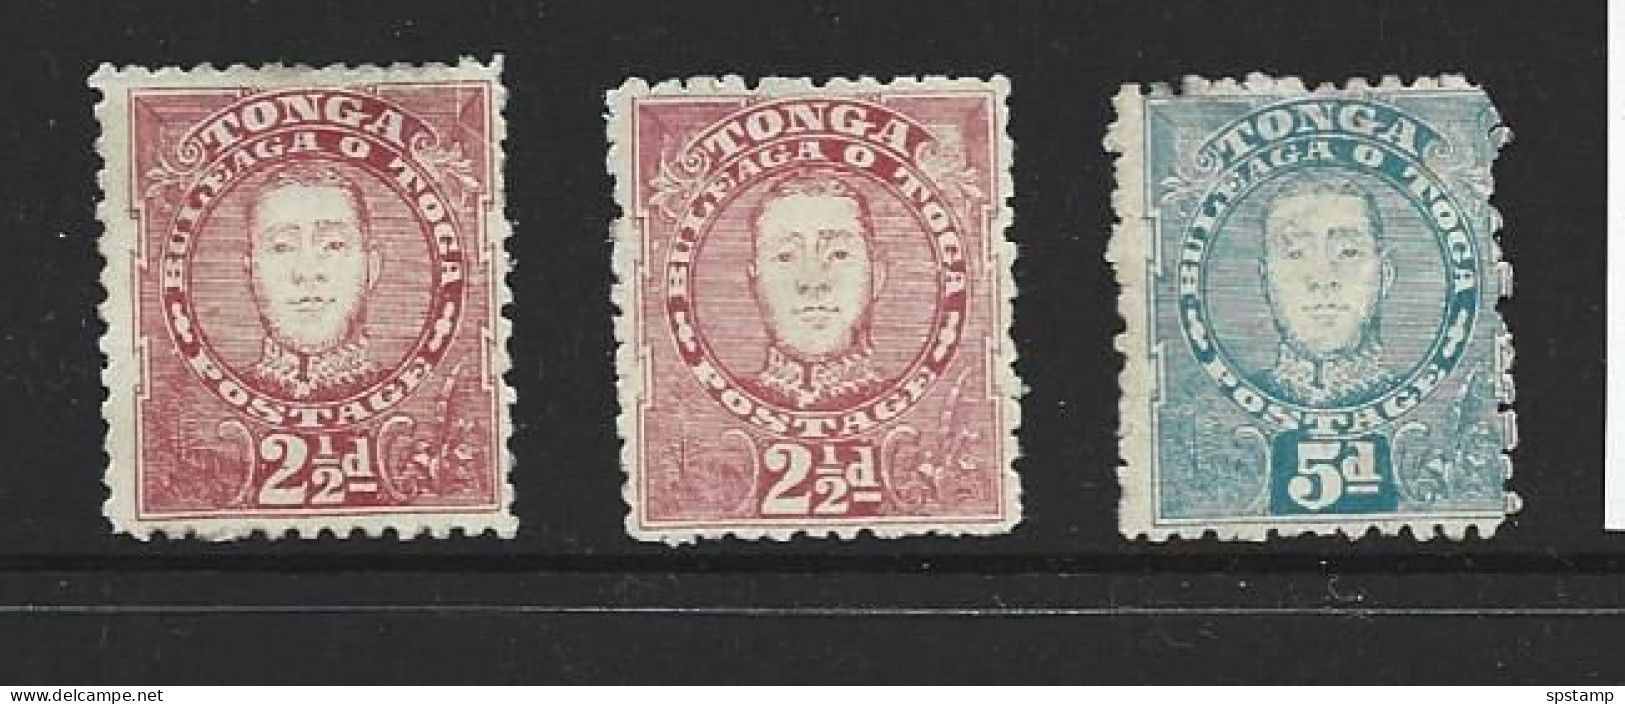 Tonga 1895 King George II 3 Values Mint Or Unused - Tonga (...-1970)